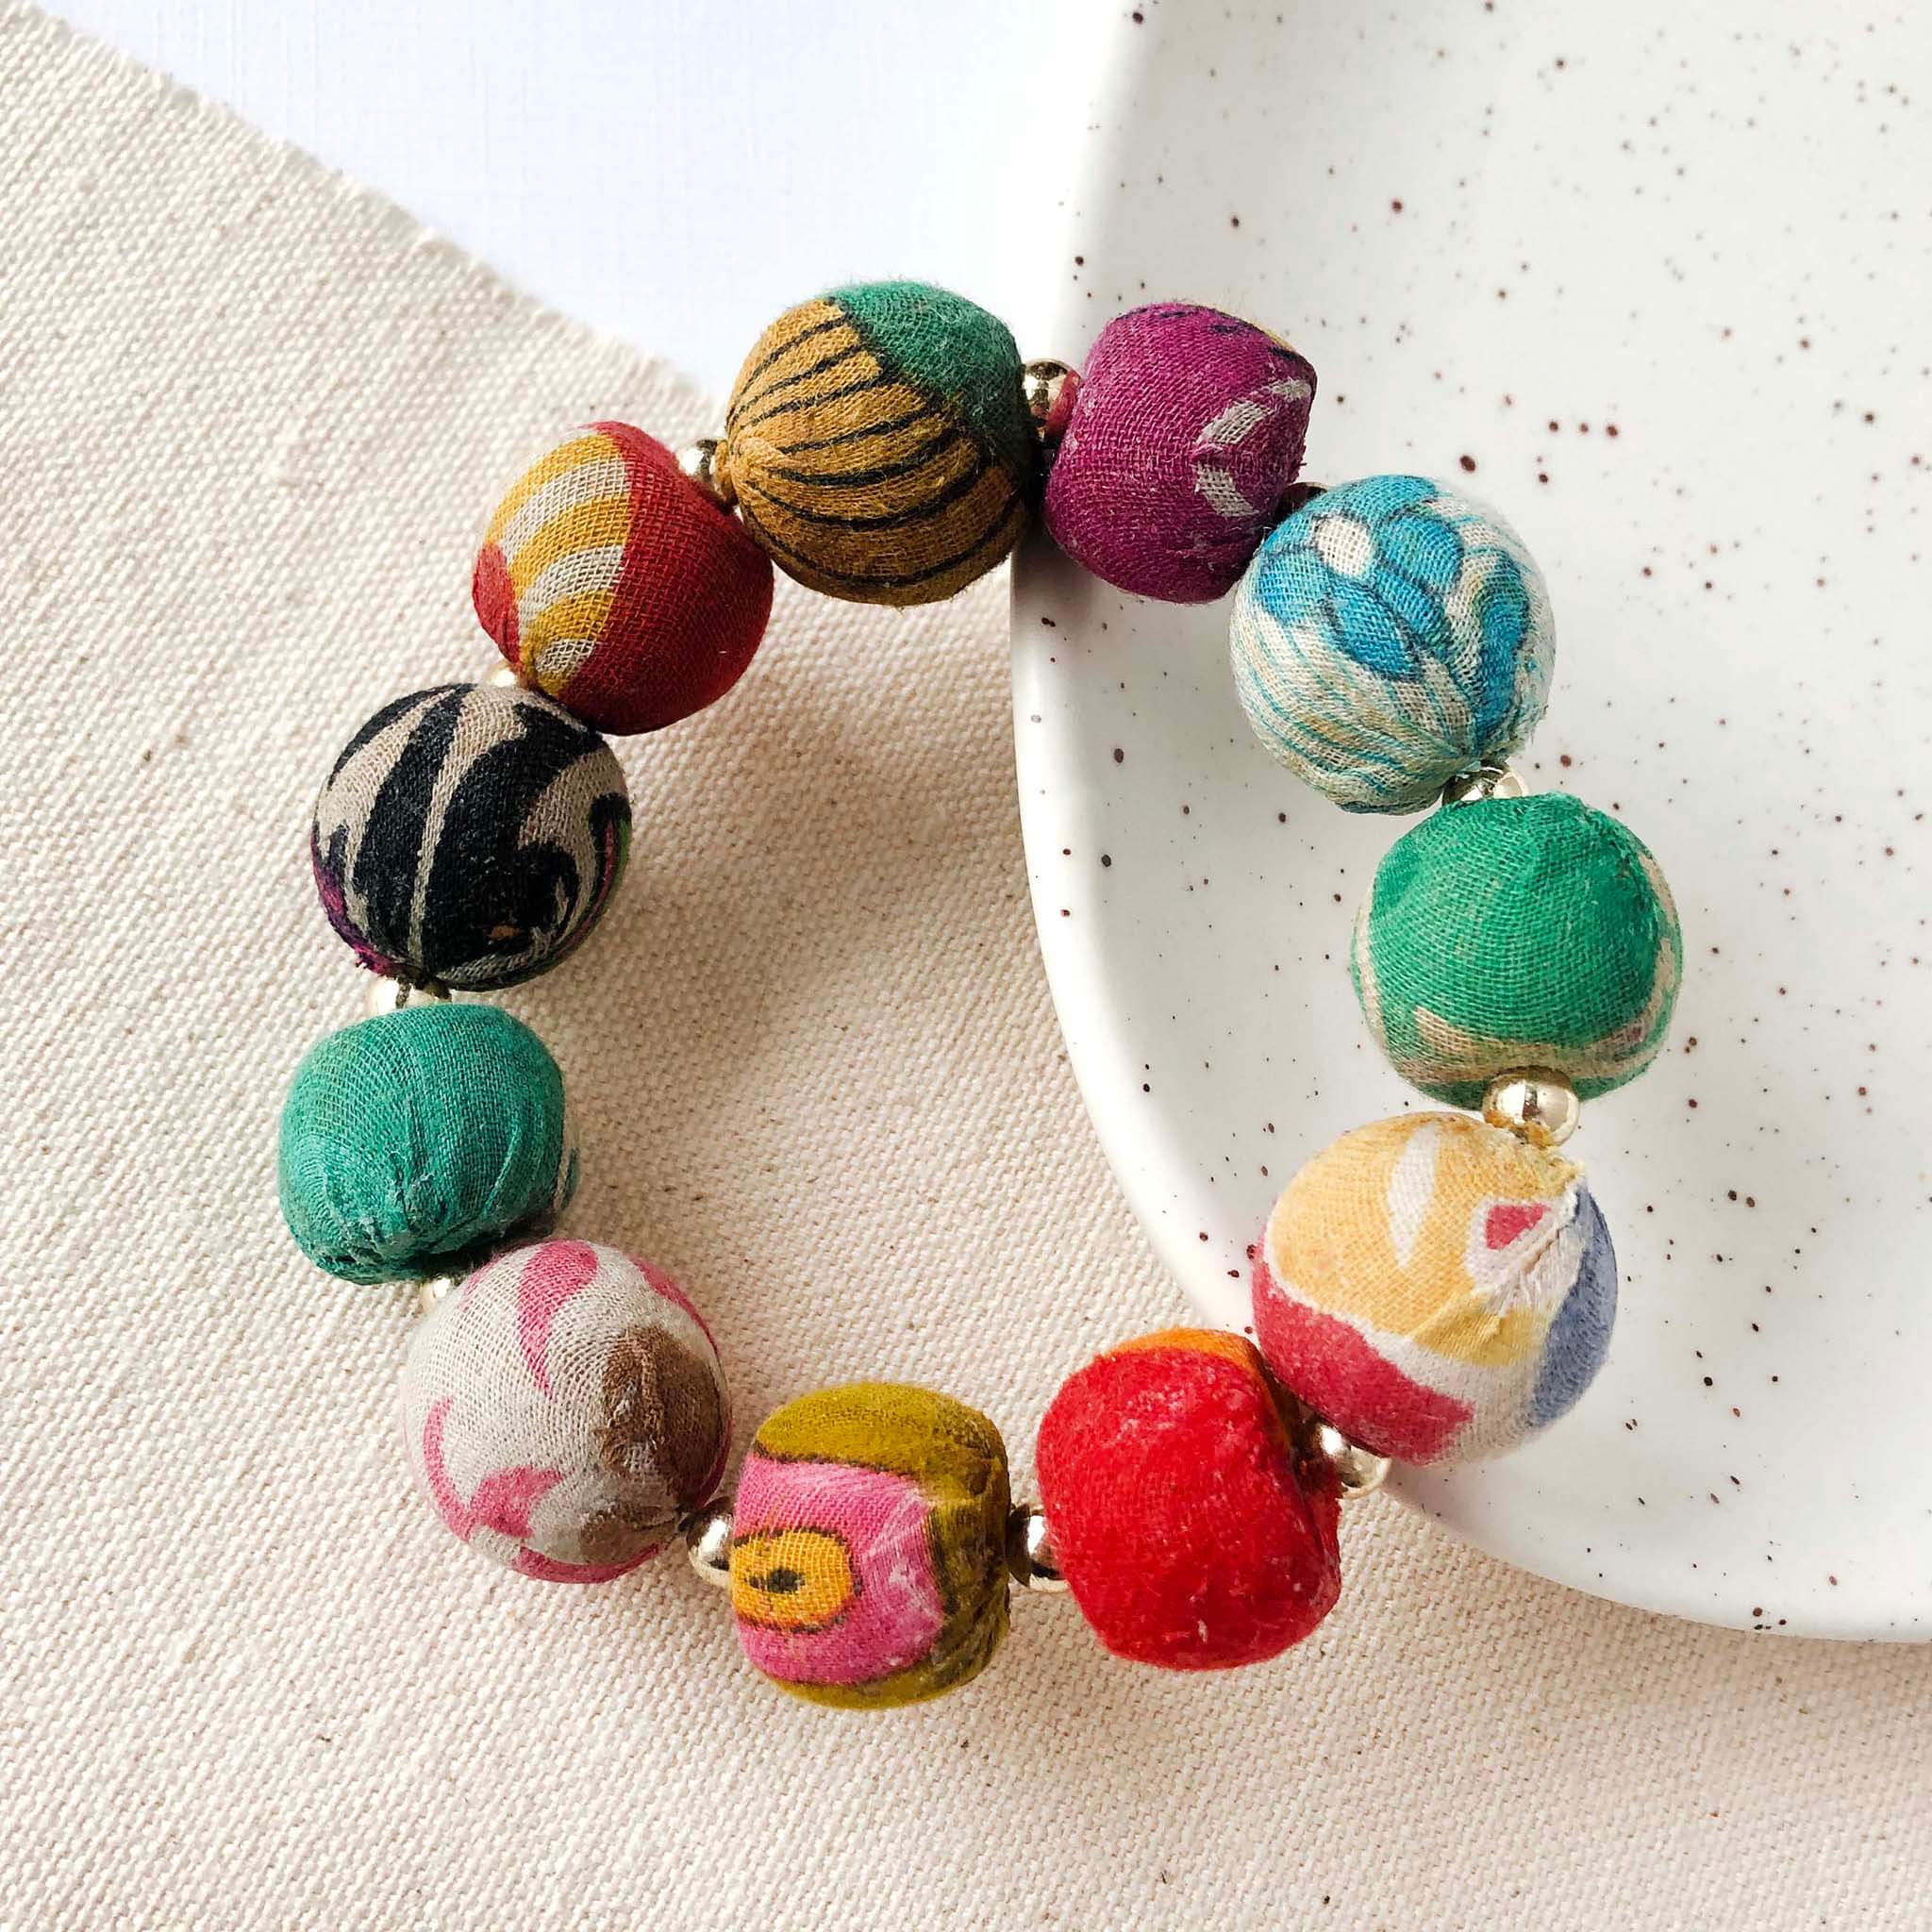 A multicolor large bead bracelet is shown.